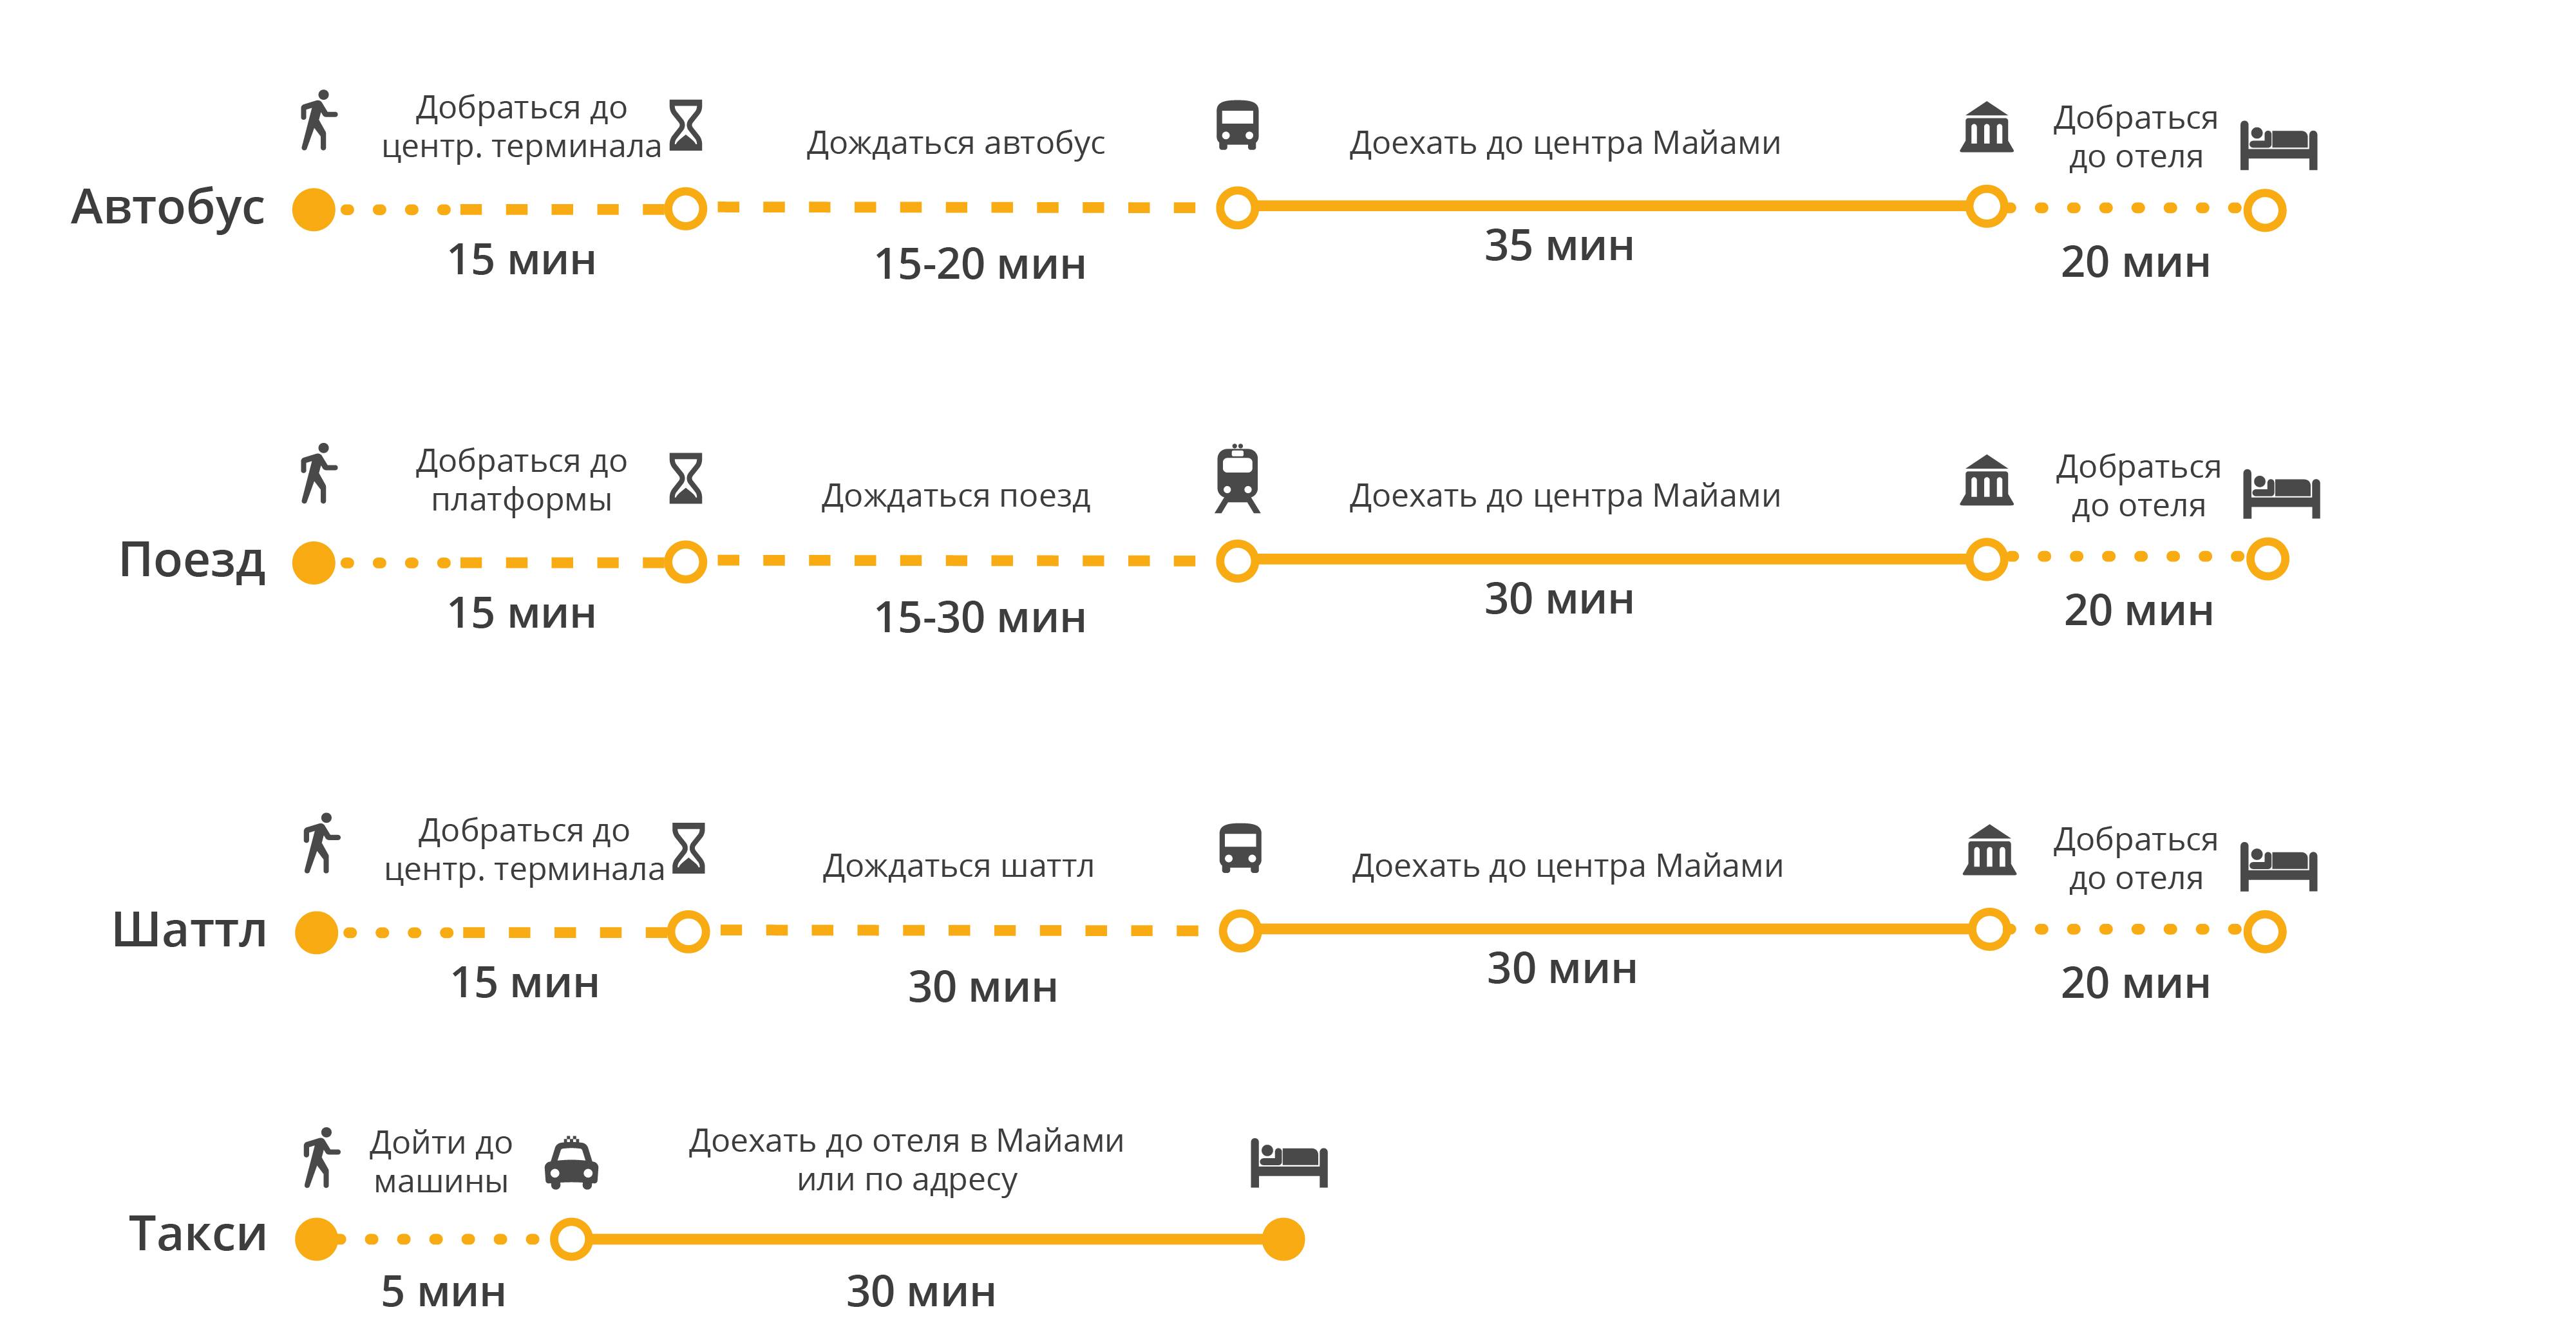 Автобусы и маршрутные такси анапы: все подробности и карты